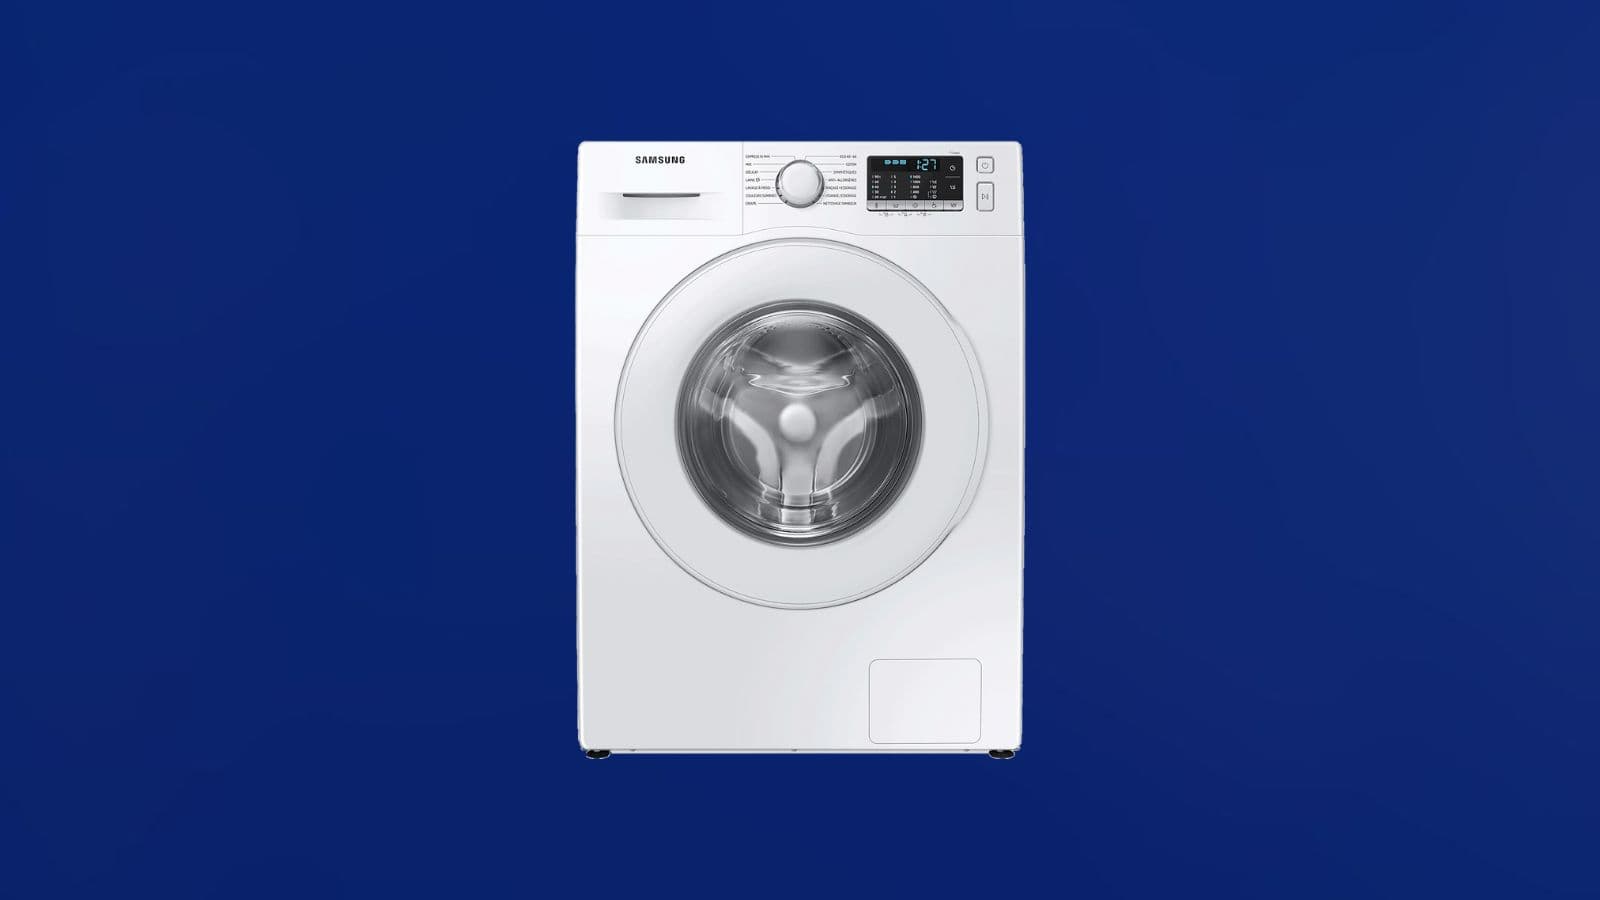 Le prix de ce lave-linge Samsung AddWash fait peur à la concurrence - Le  Parisien